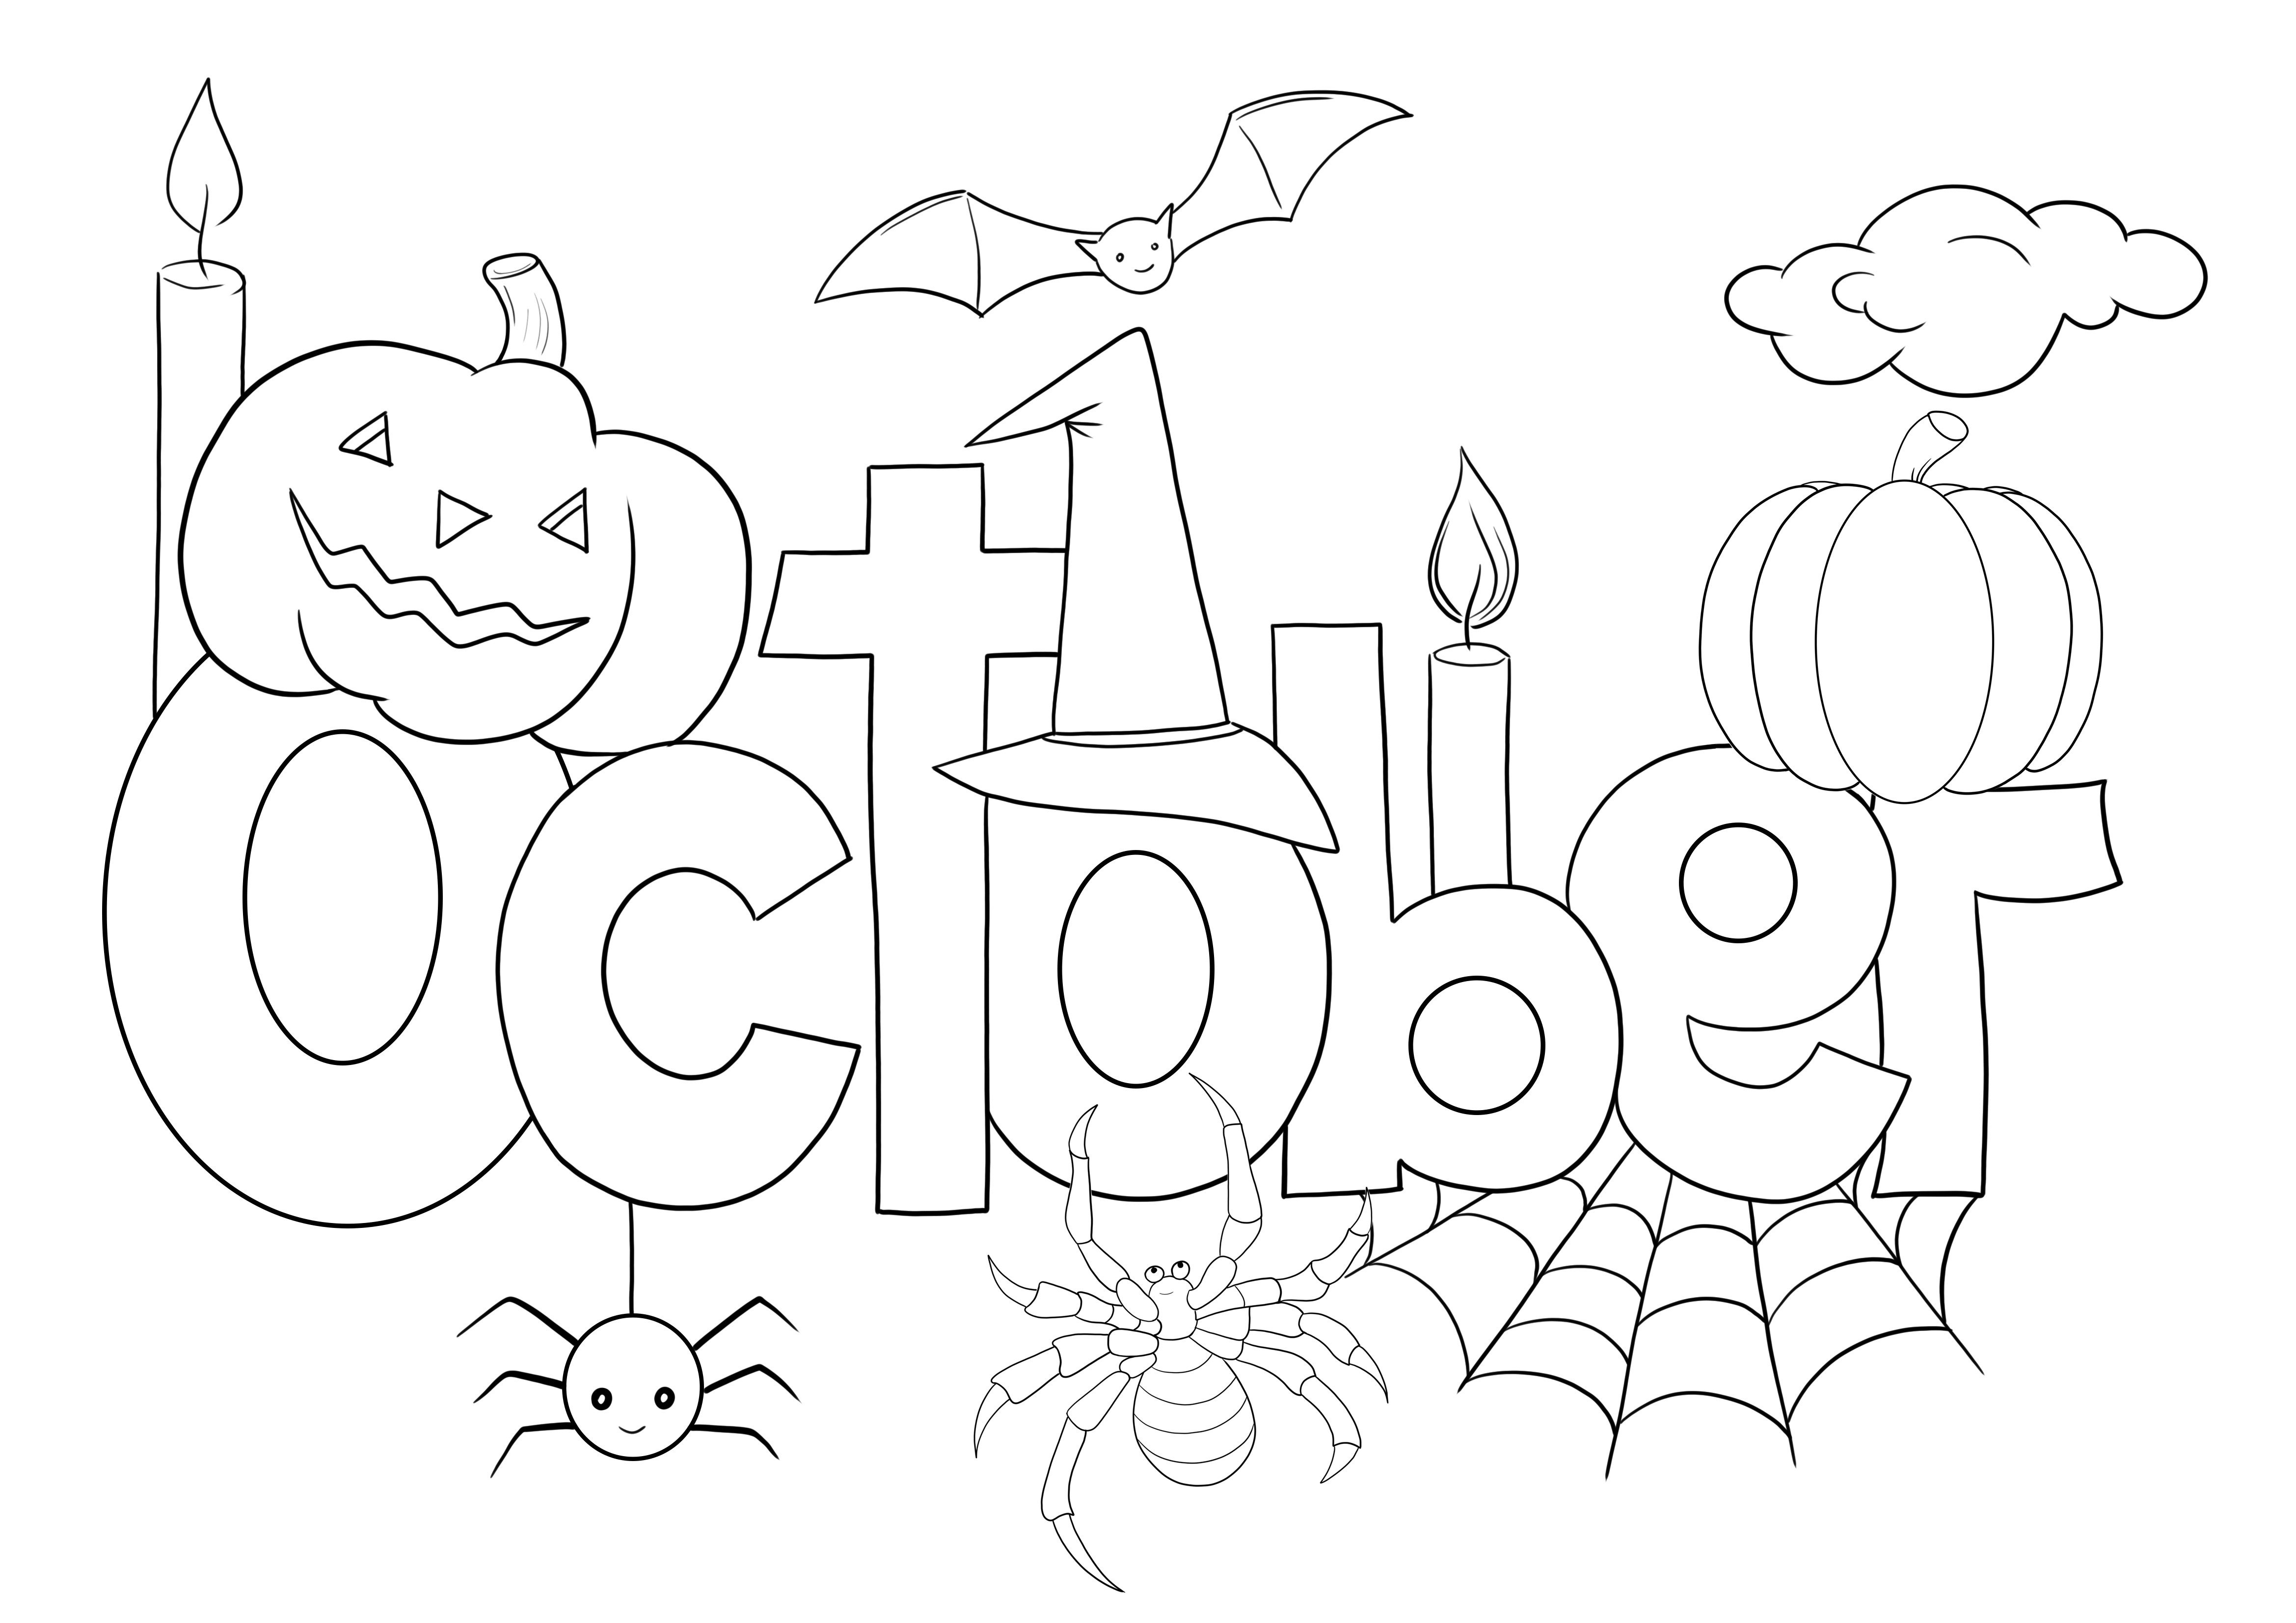 Dibujo para colorear de octubre gratis para descargar y colorear